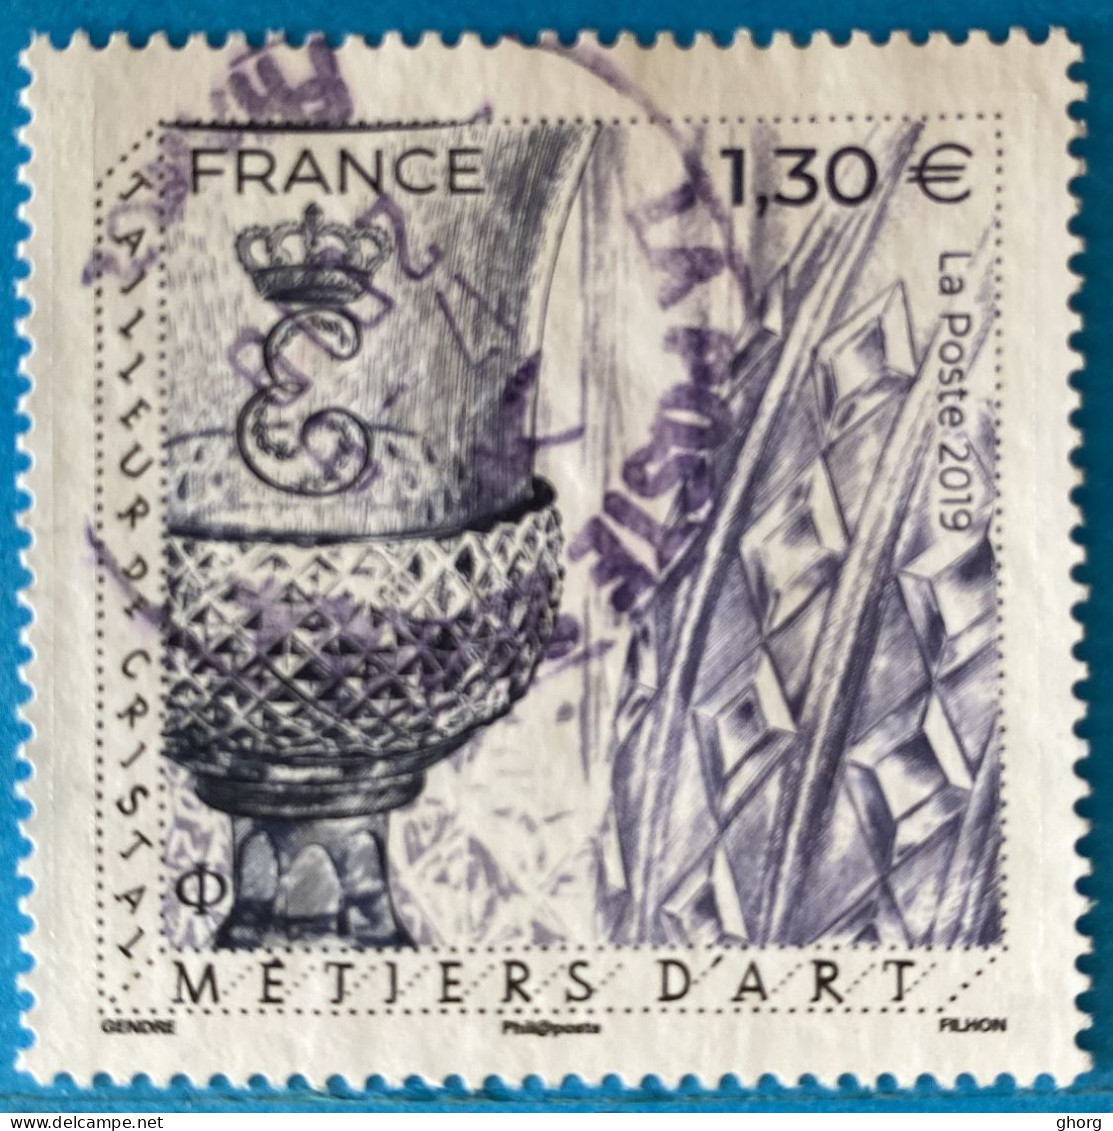 France 2019 : Les Métiers D'art, Tailleur De Cristal N° 5306 Oblitéré - Used Stamps